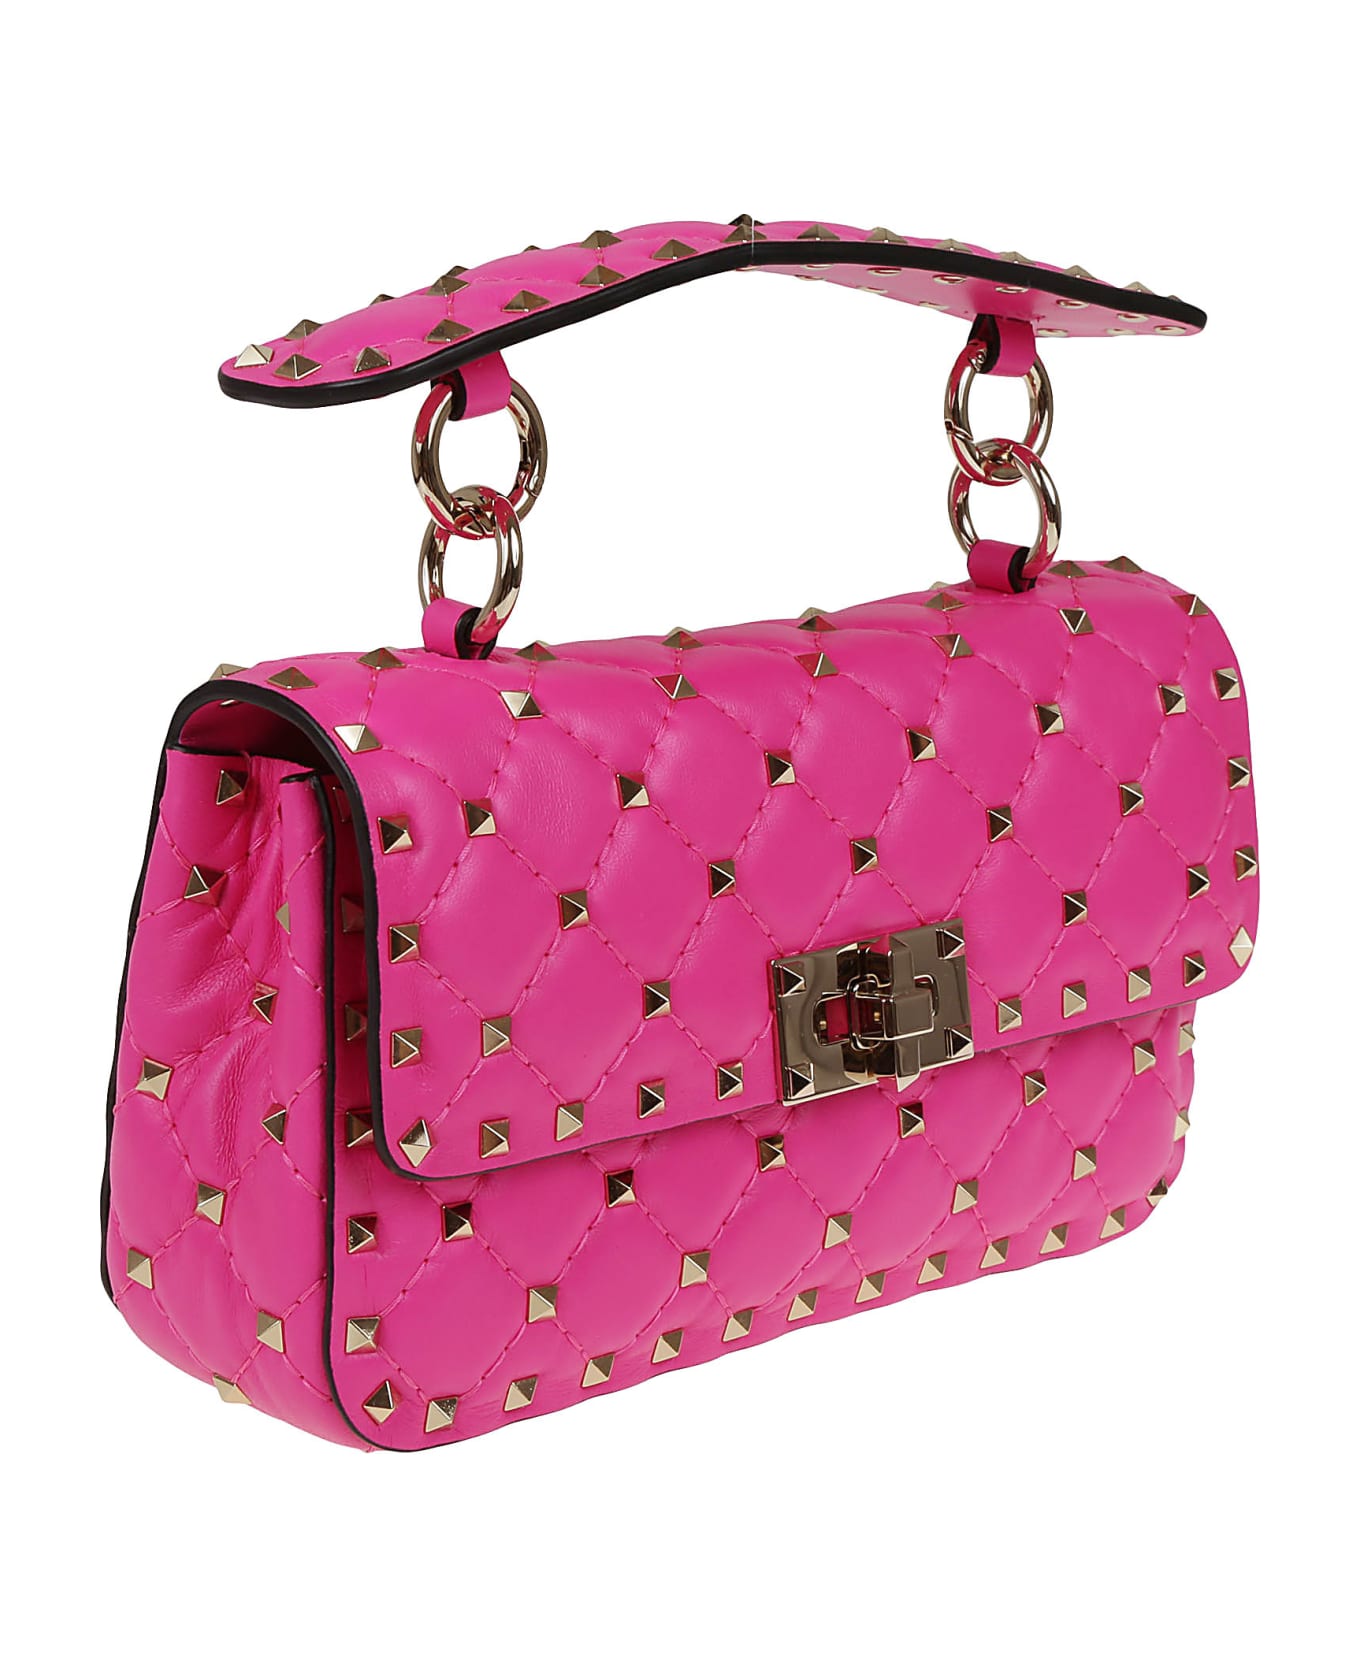 Valentino Garavani Small Shoulder Bag Rockstud Spike - Uwt Pink Pp